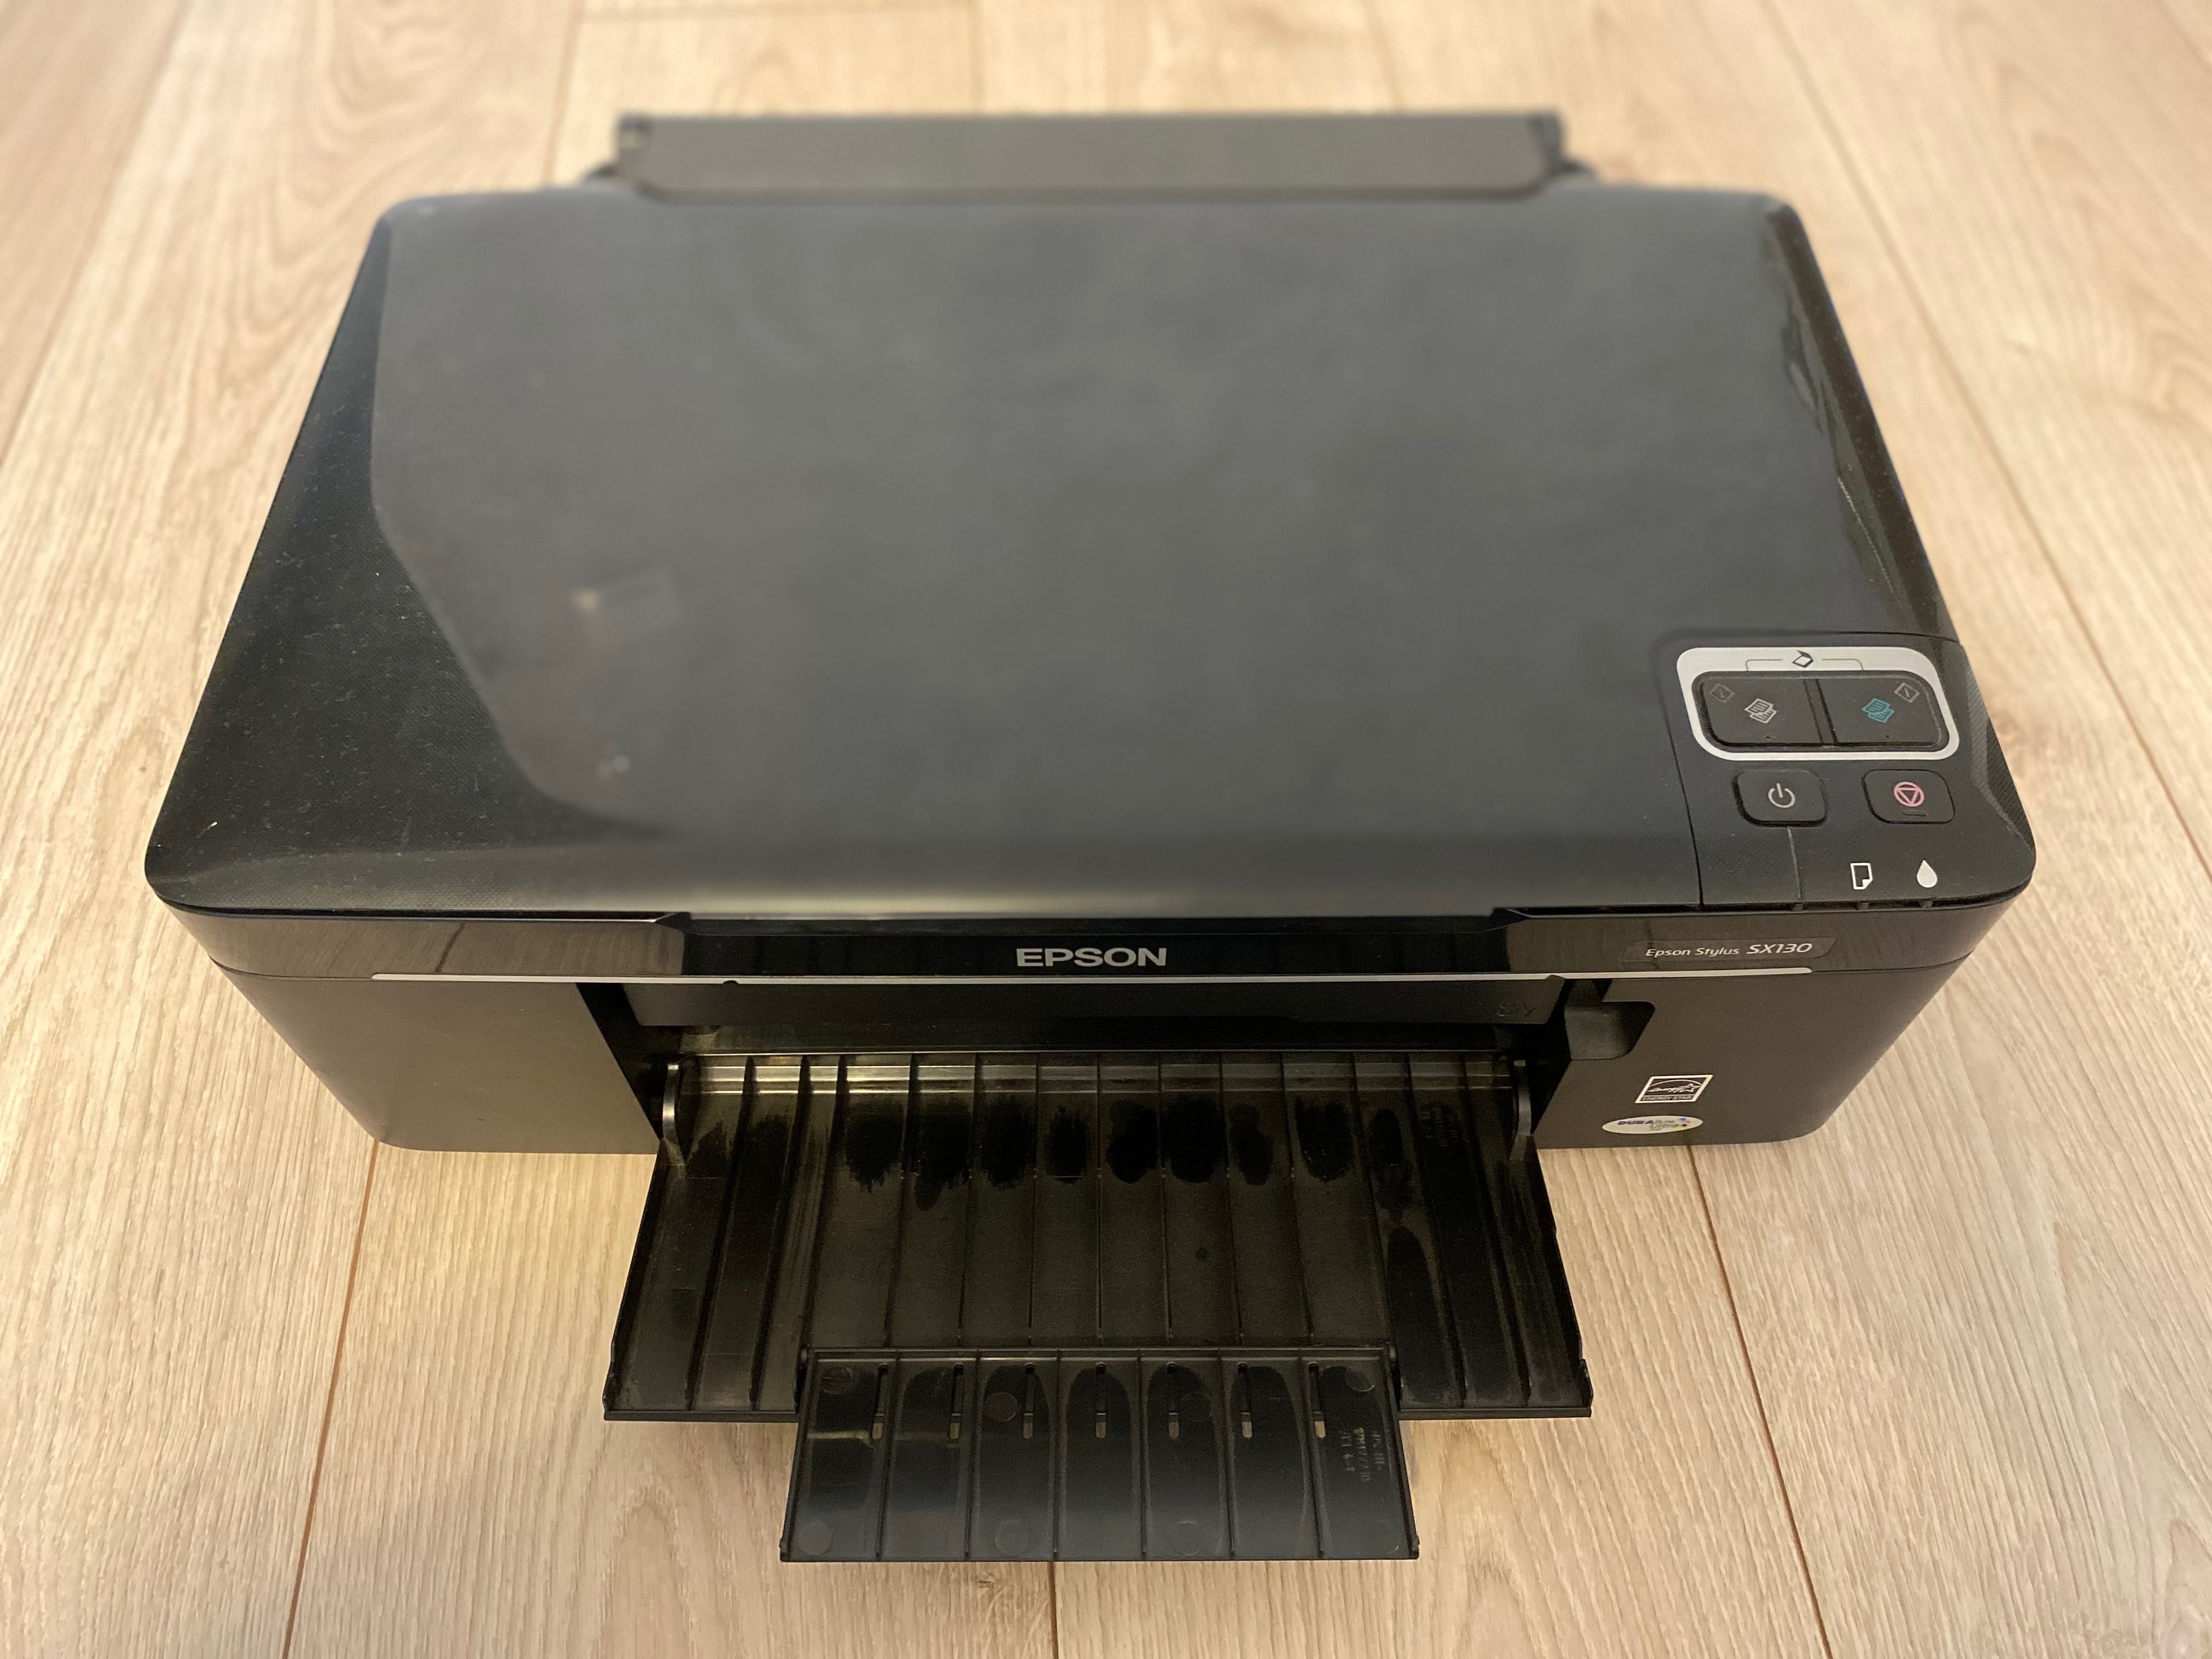 Принтер Epson stylus sx 130 на запчасти, разборка принтера. Катриджи